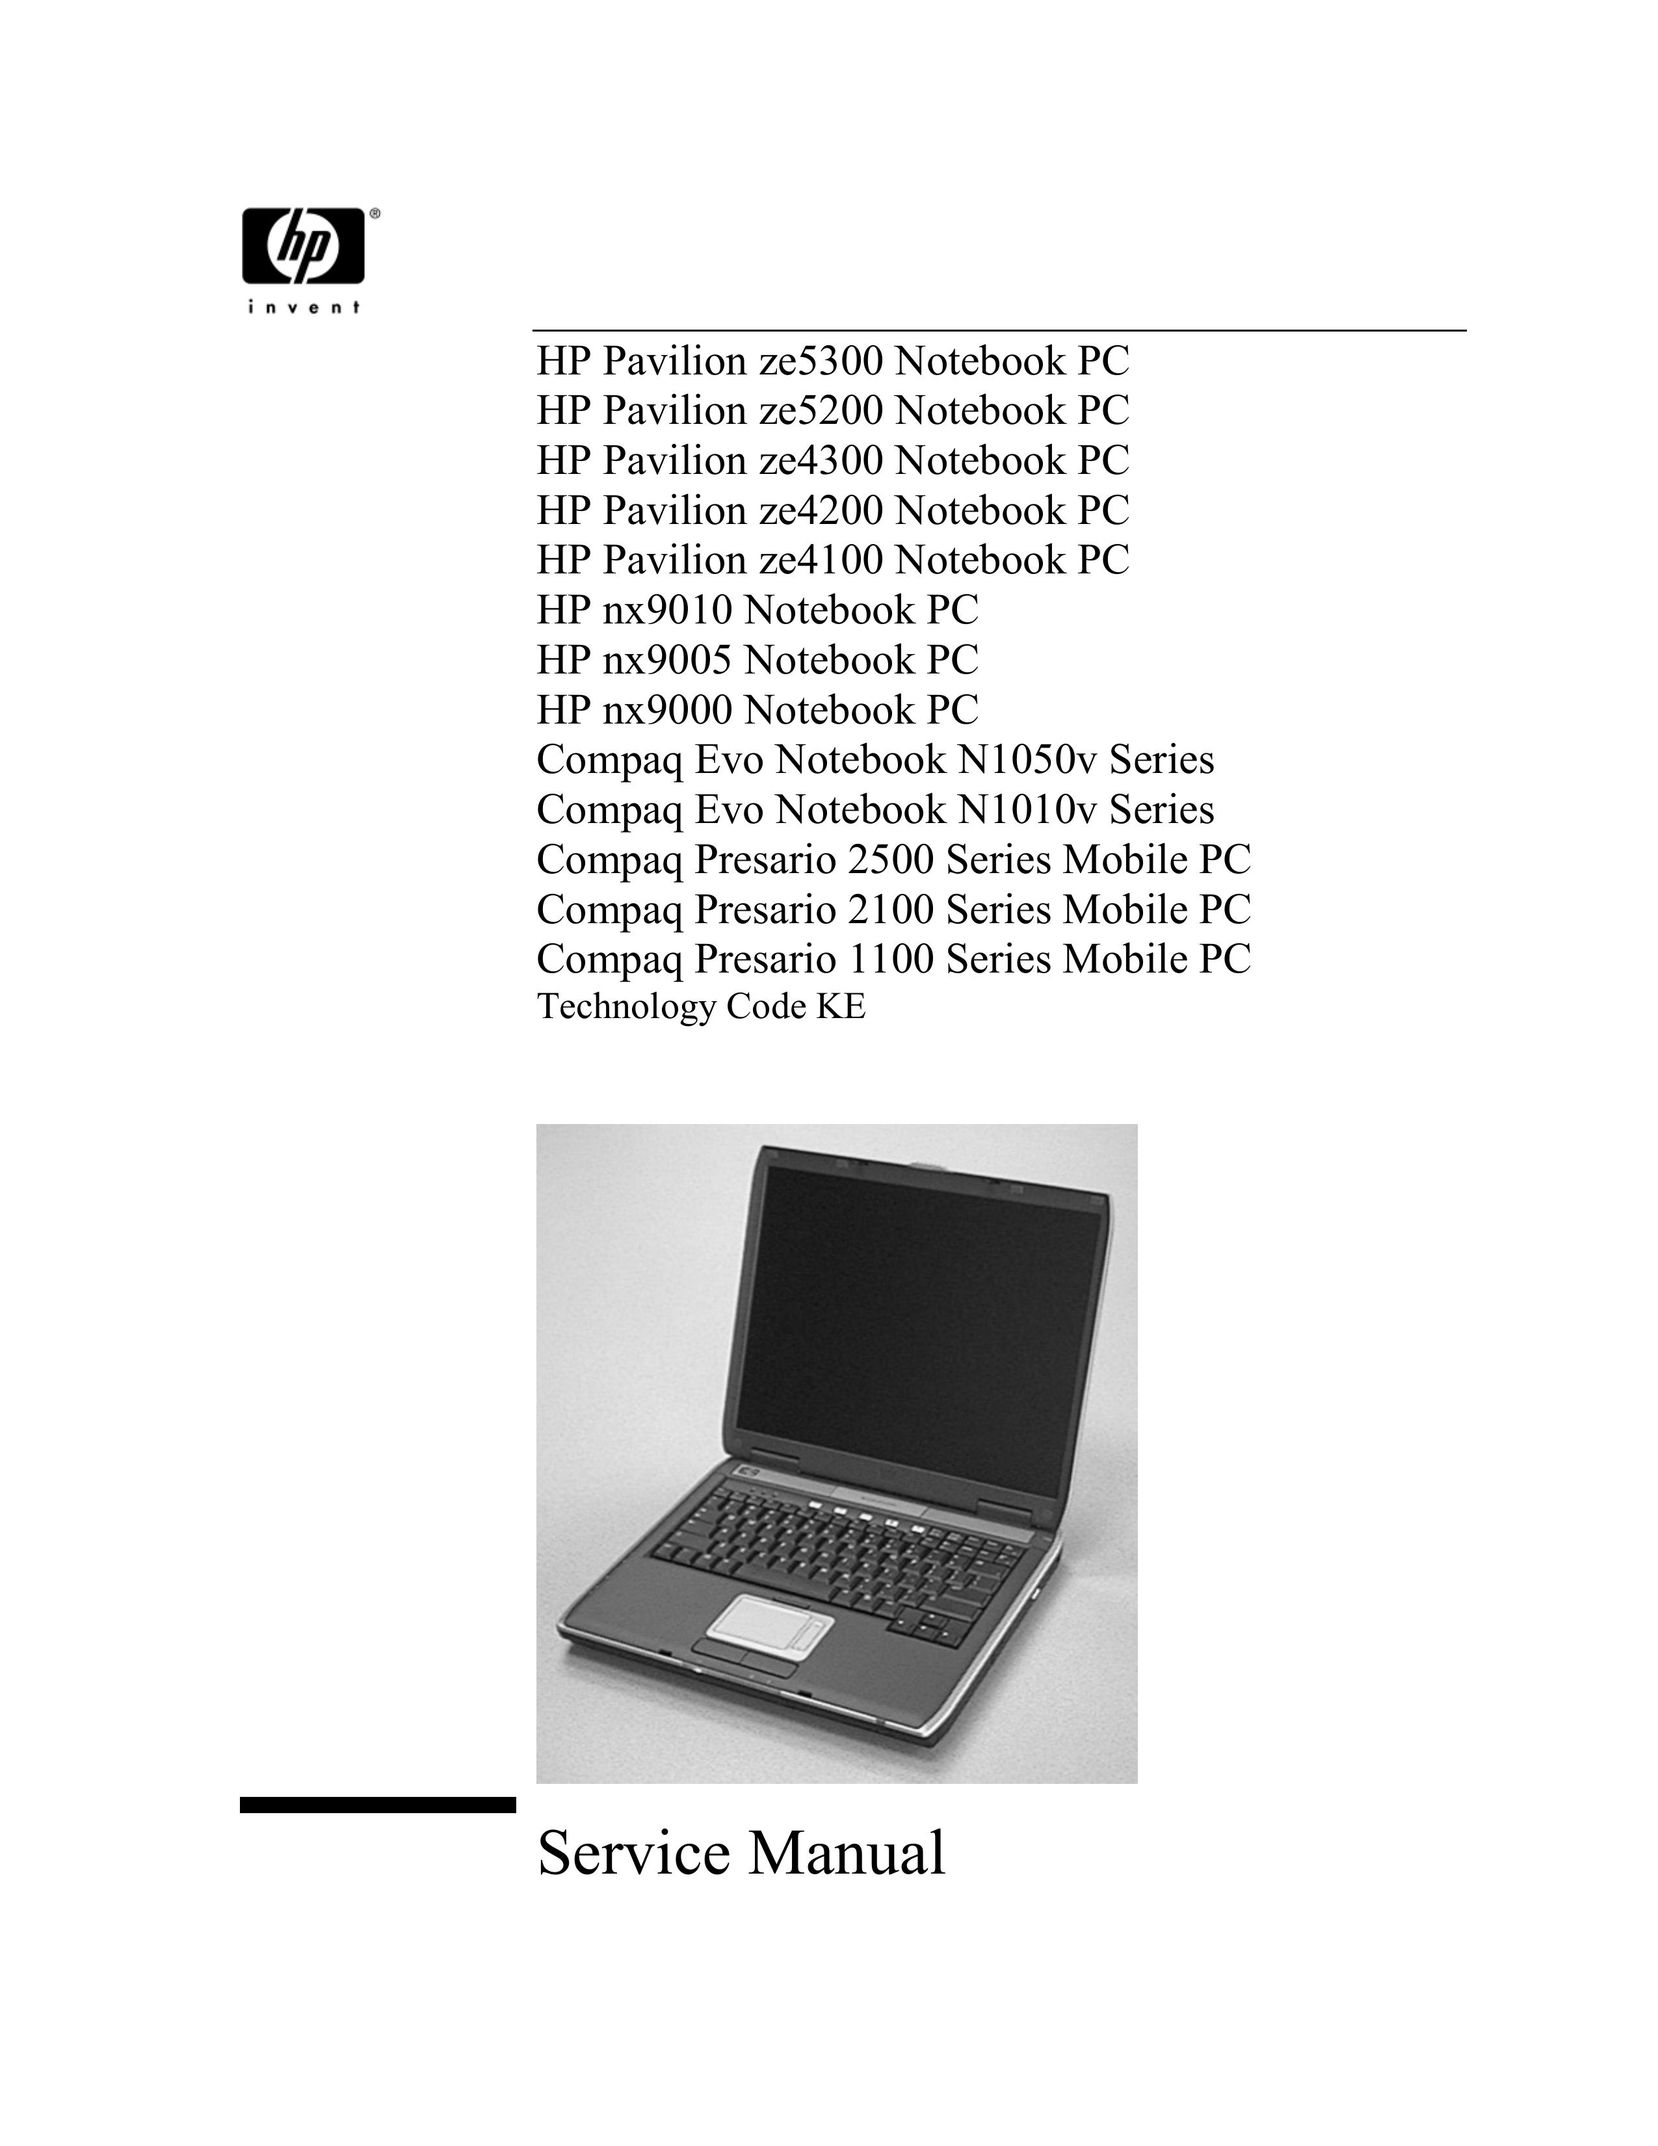 HP (Hewlett-Packard) 2500 Laptop User Manual